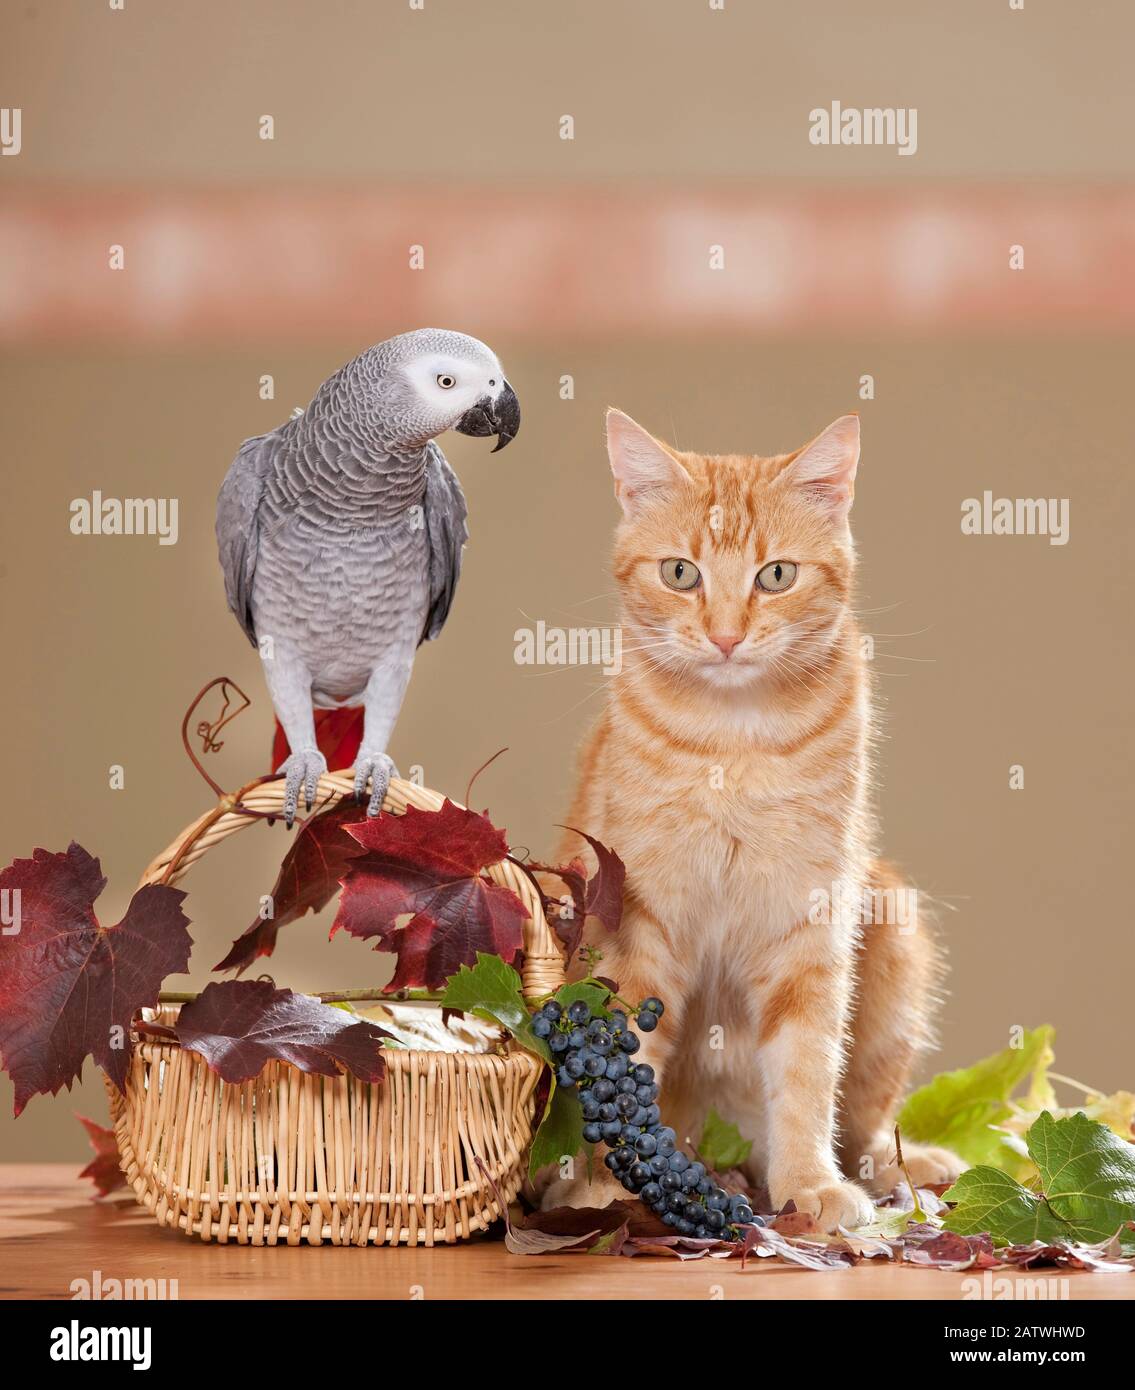 Il Parrot grigio si erge su un cesto con foglie di vite e uva accanto ad un gatto rosso tabby domestico. Germania... Foto Stock